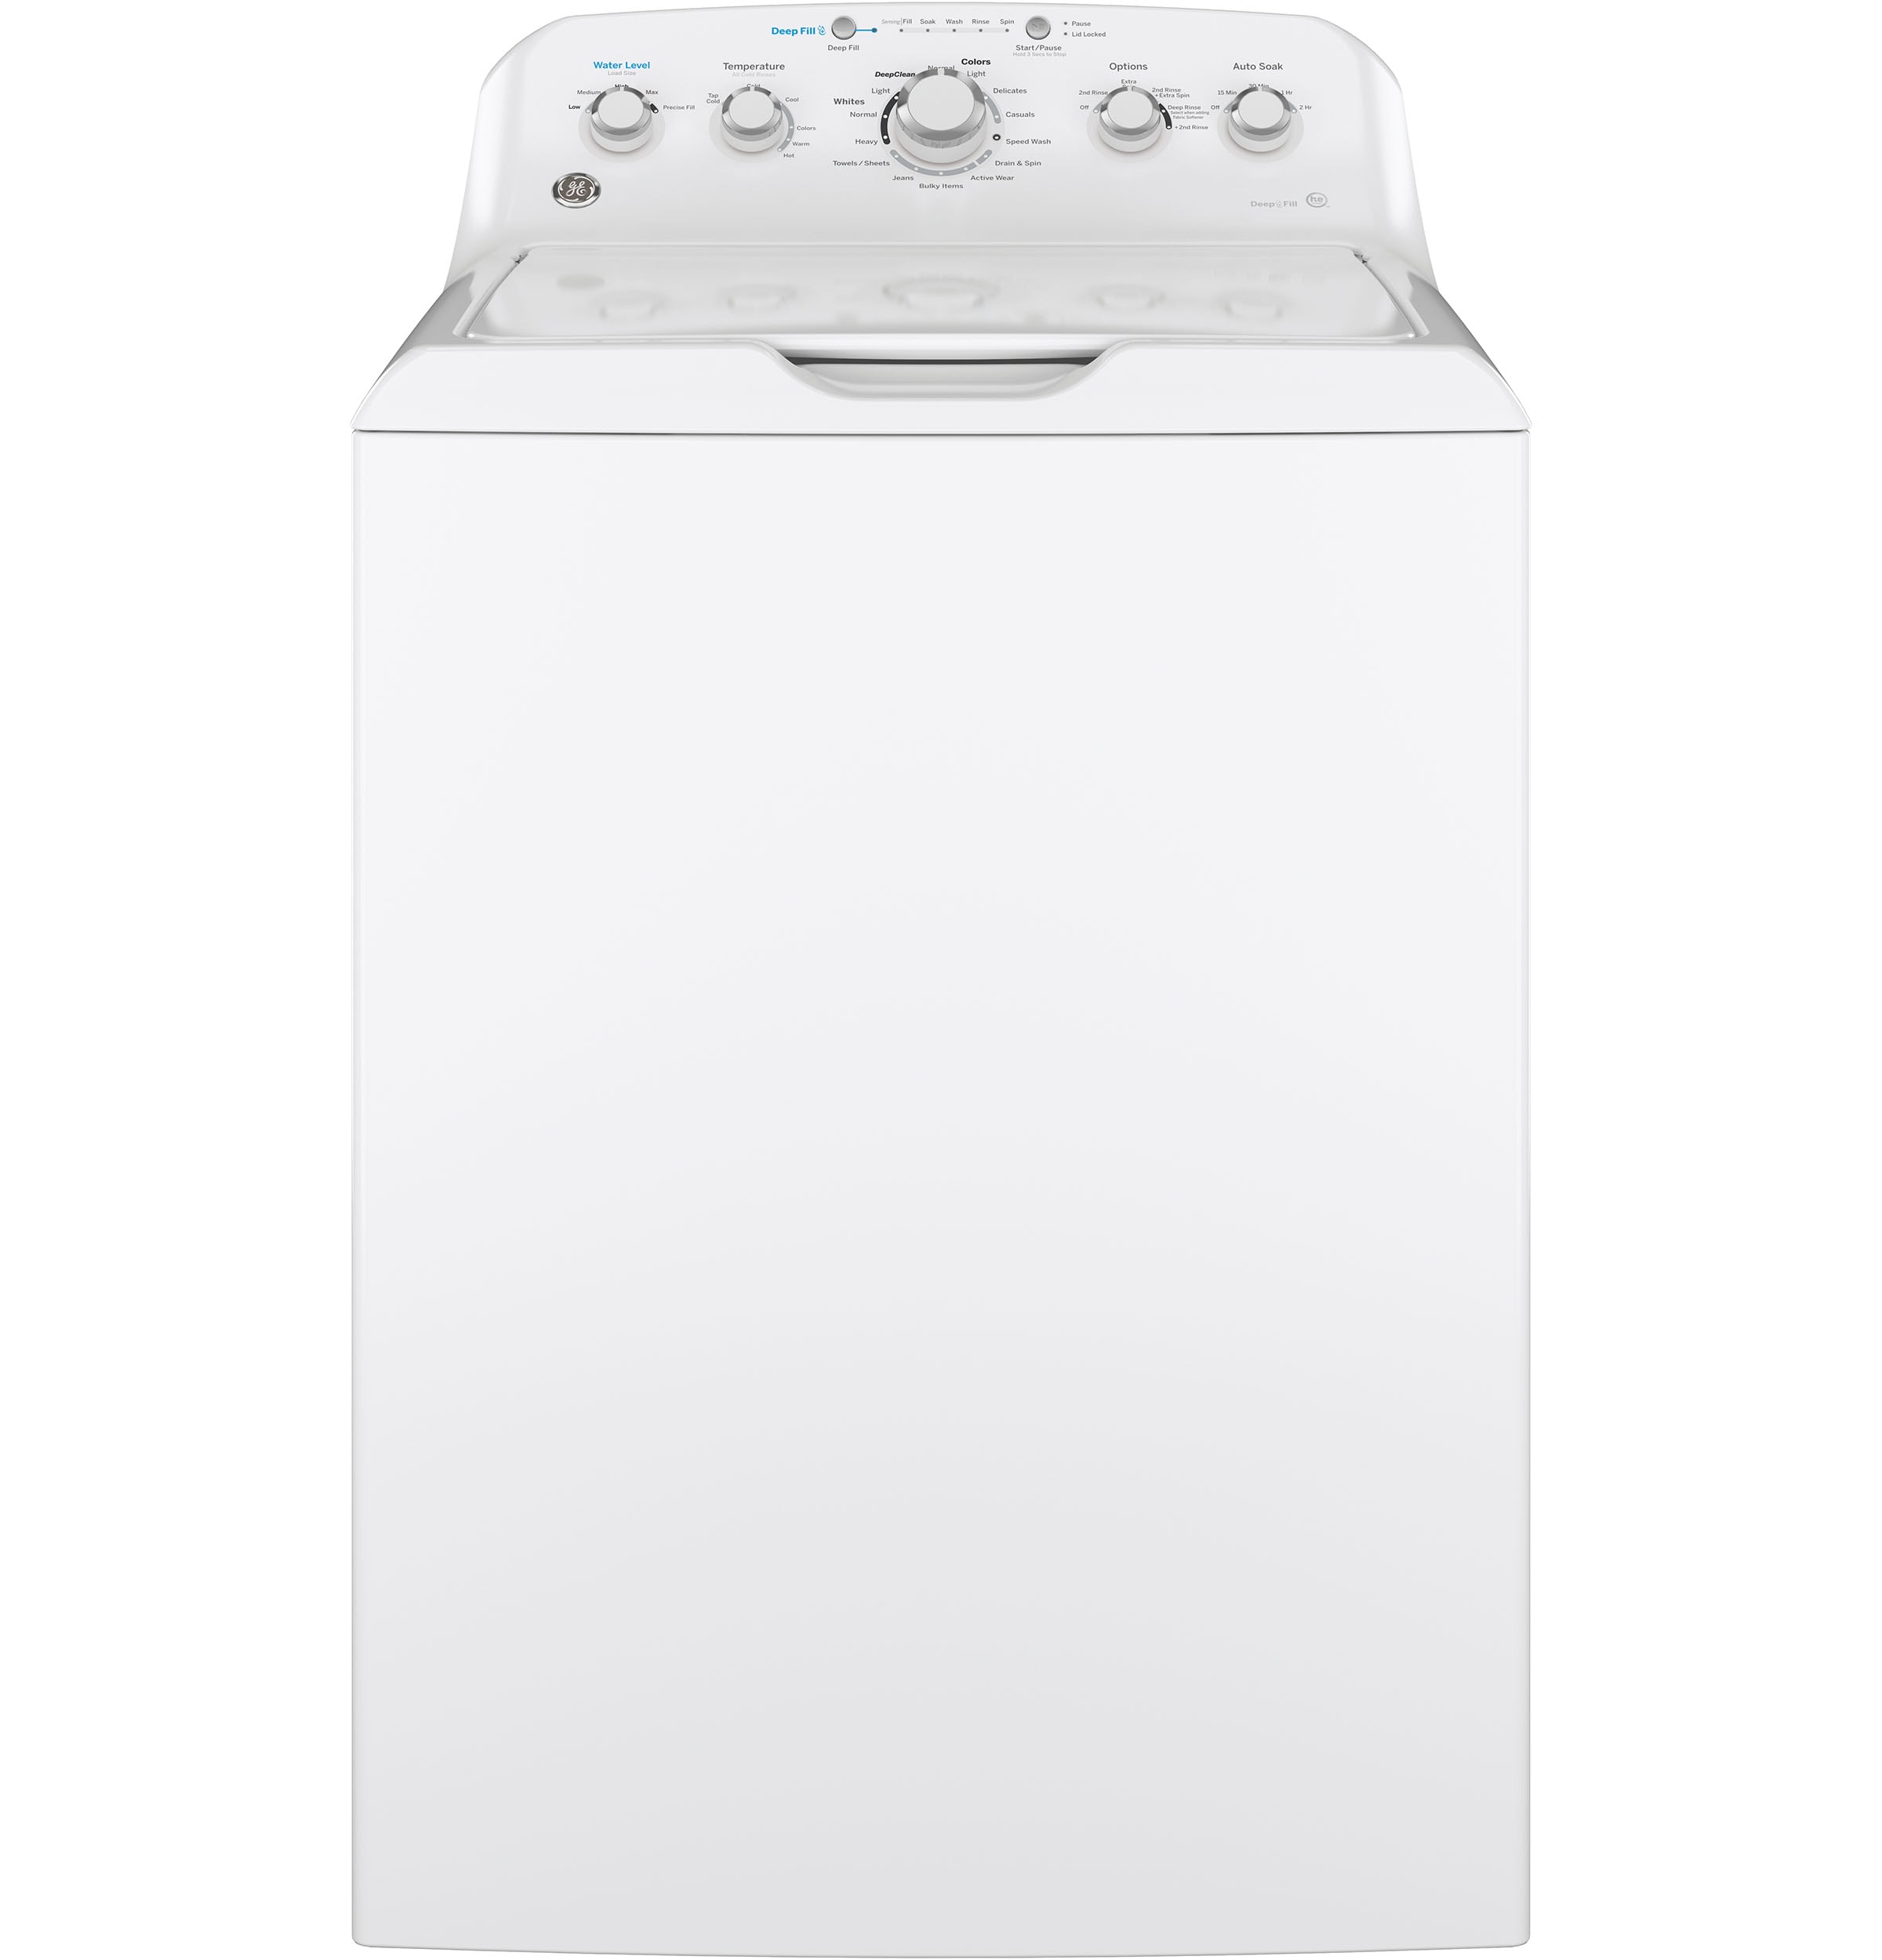 Portable washing machine for sale - Brooklyn. $200 : r/NYList